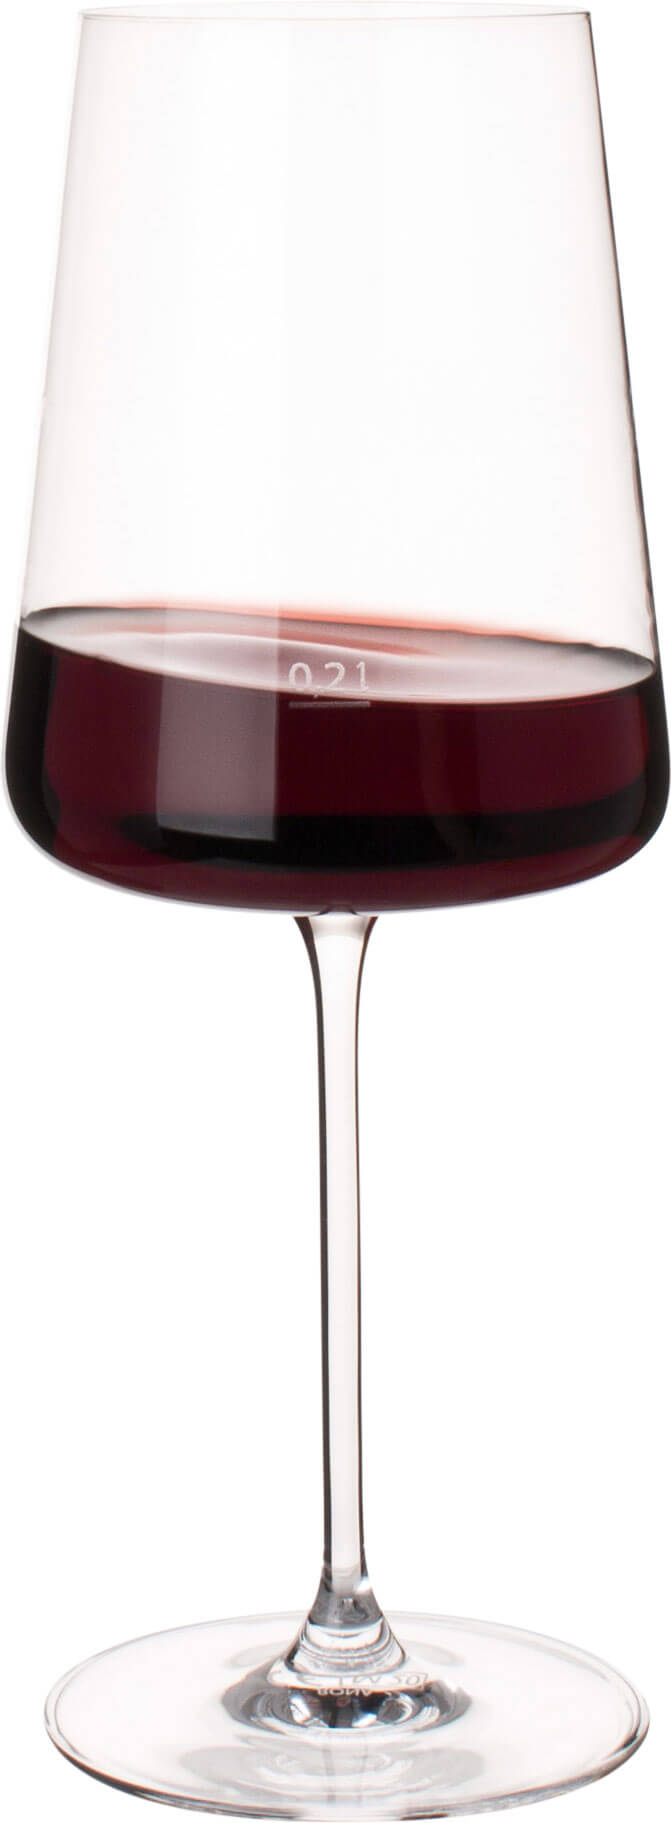 Bordeauxglas Mode, Rona - 680ml, 0,2l Eiche (1 Stk.)